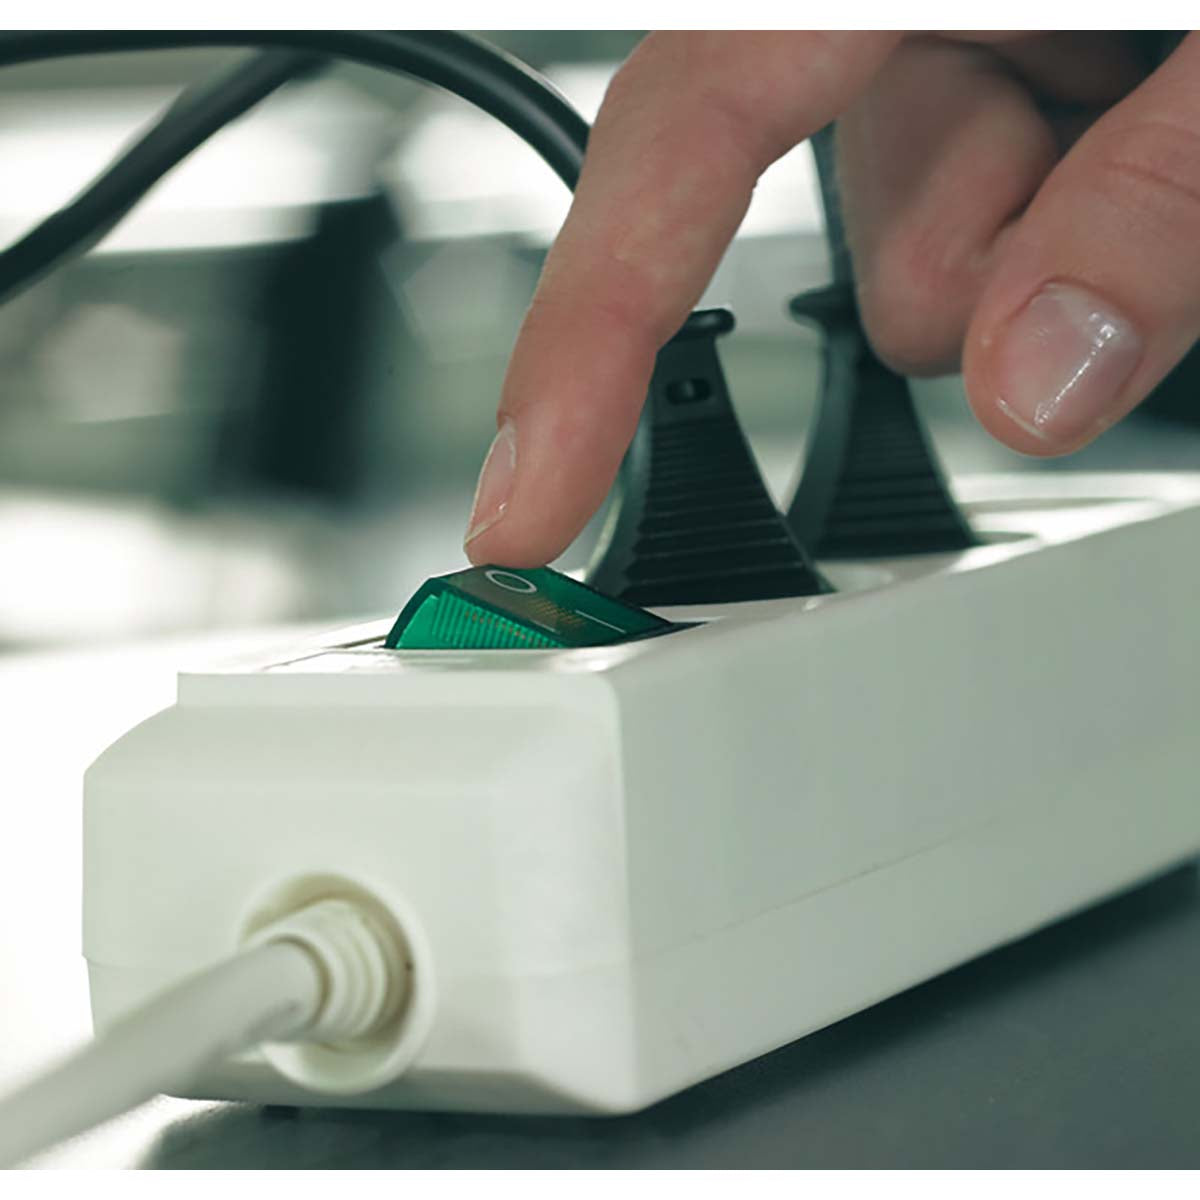 Eco-Line 3-fach Steckdosenleiste (Steckdosenblock mit erhöhtem Berührungsschutz, Schalter, 1,50 m Kabel) Weiß TYPE F